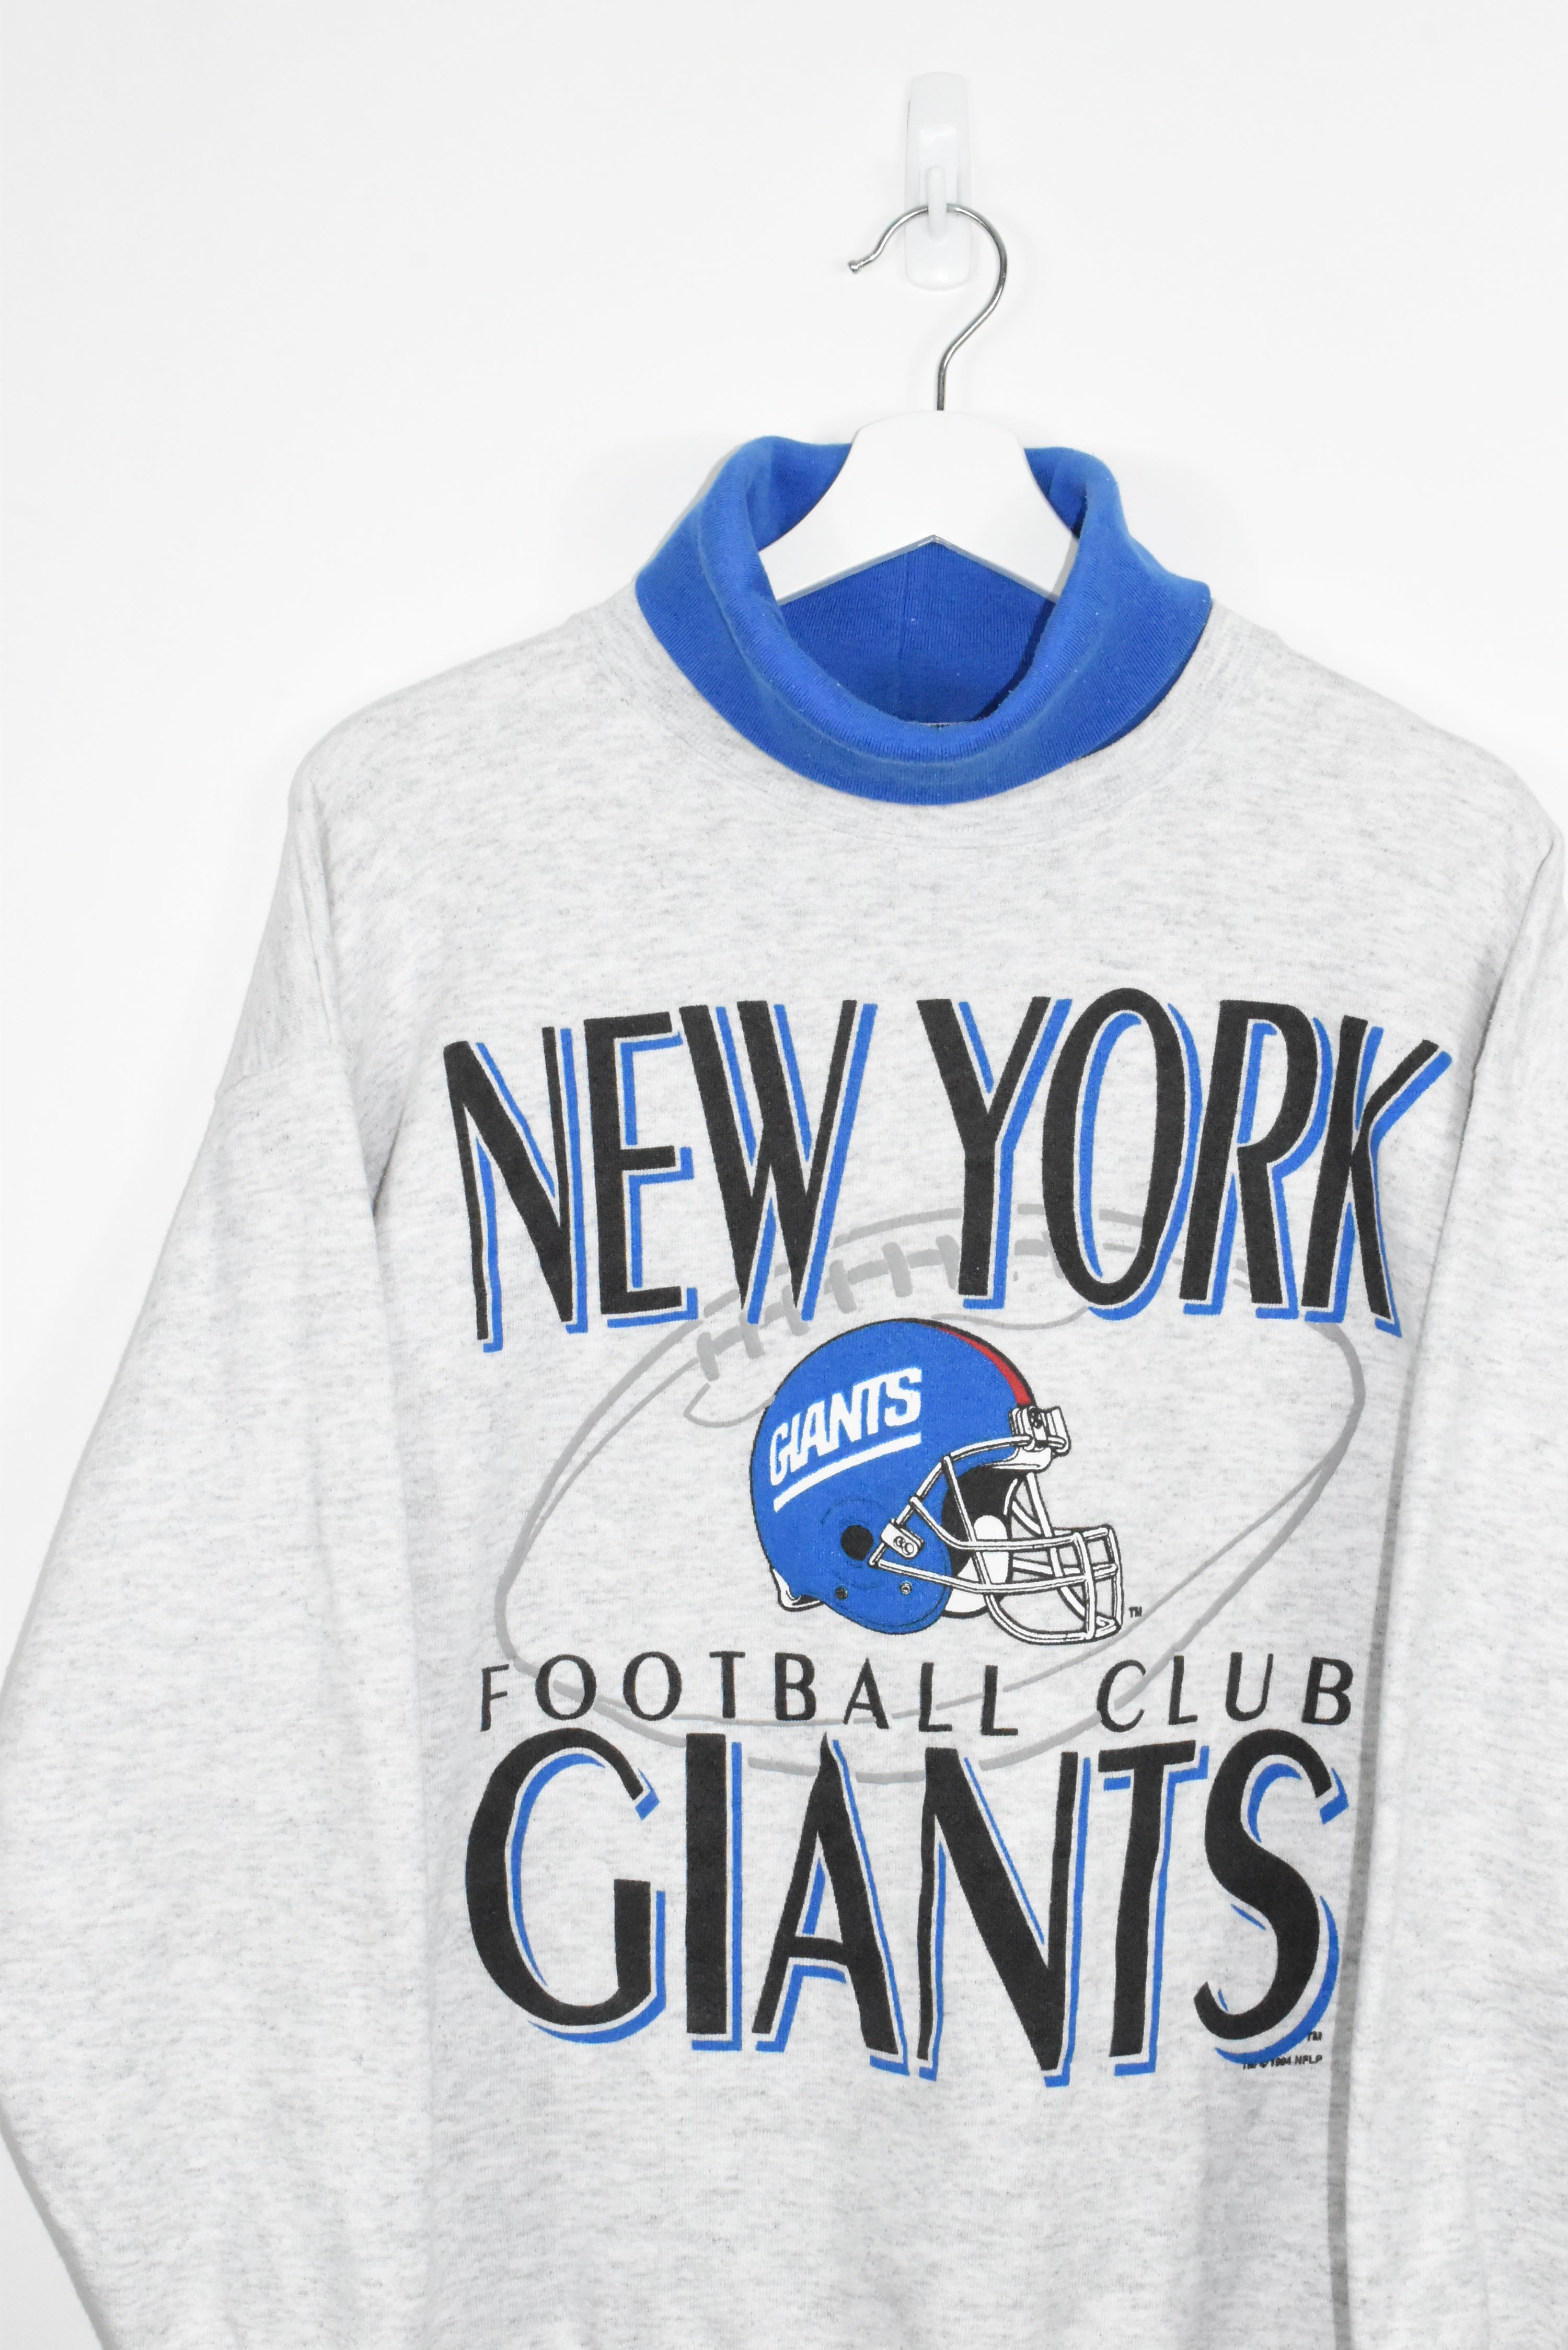 Vintage New York Giants Turtleneck Sweatshirt Large